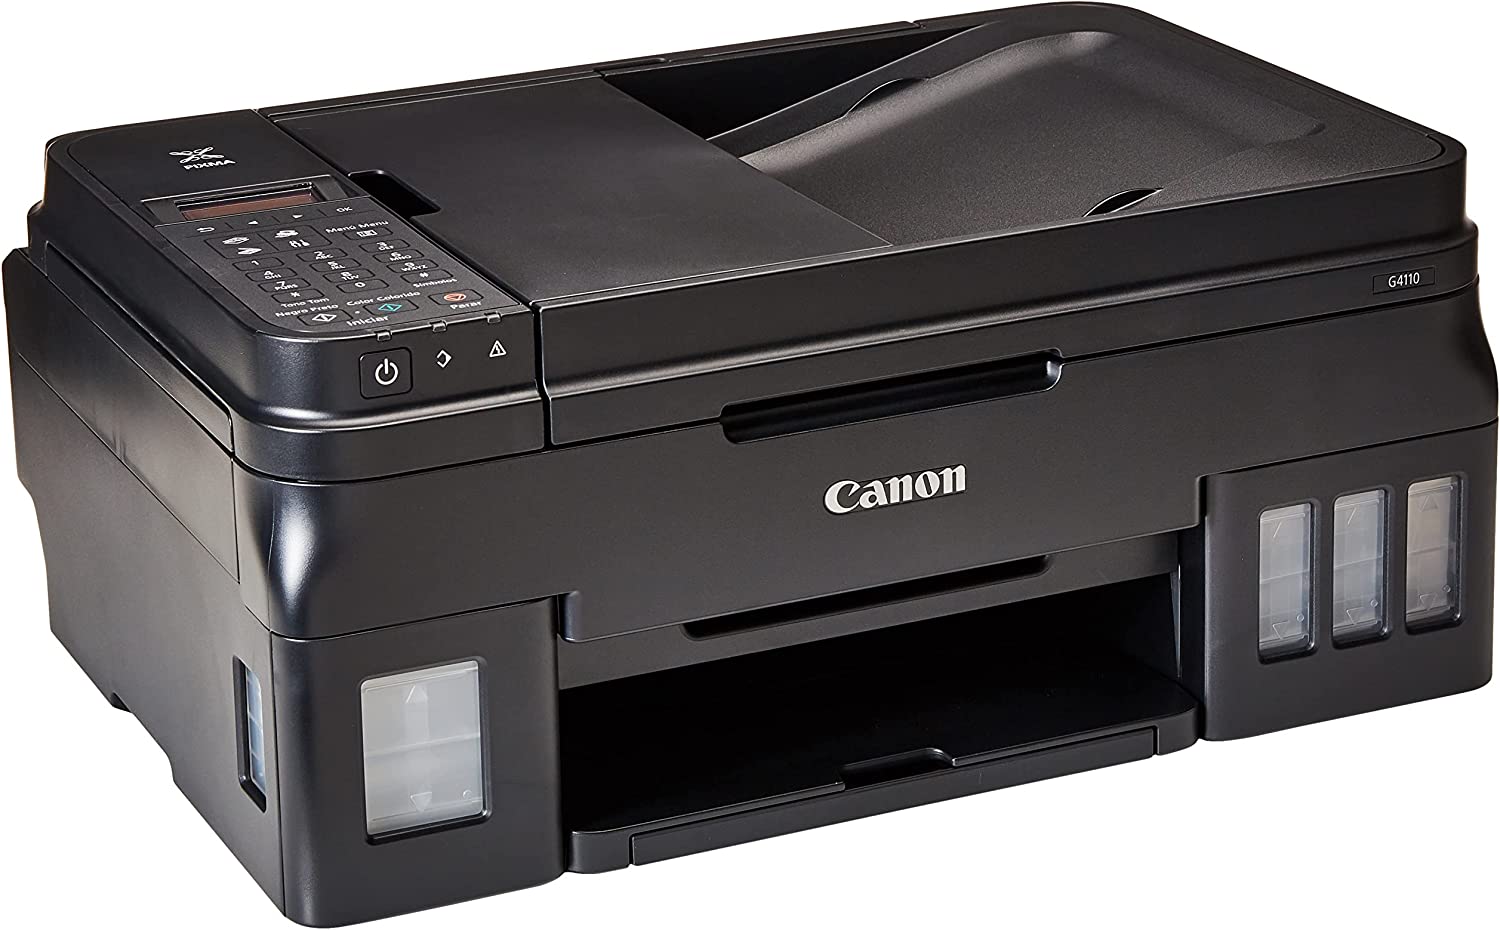 Impresora multifuncional Canon PIXMA G4110, ADF de 20 hojas, inalámbrica,  tanques de tinta integrados